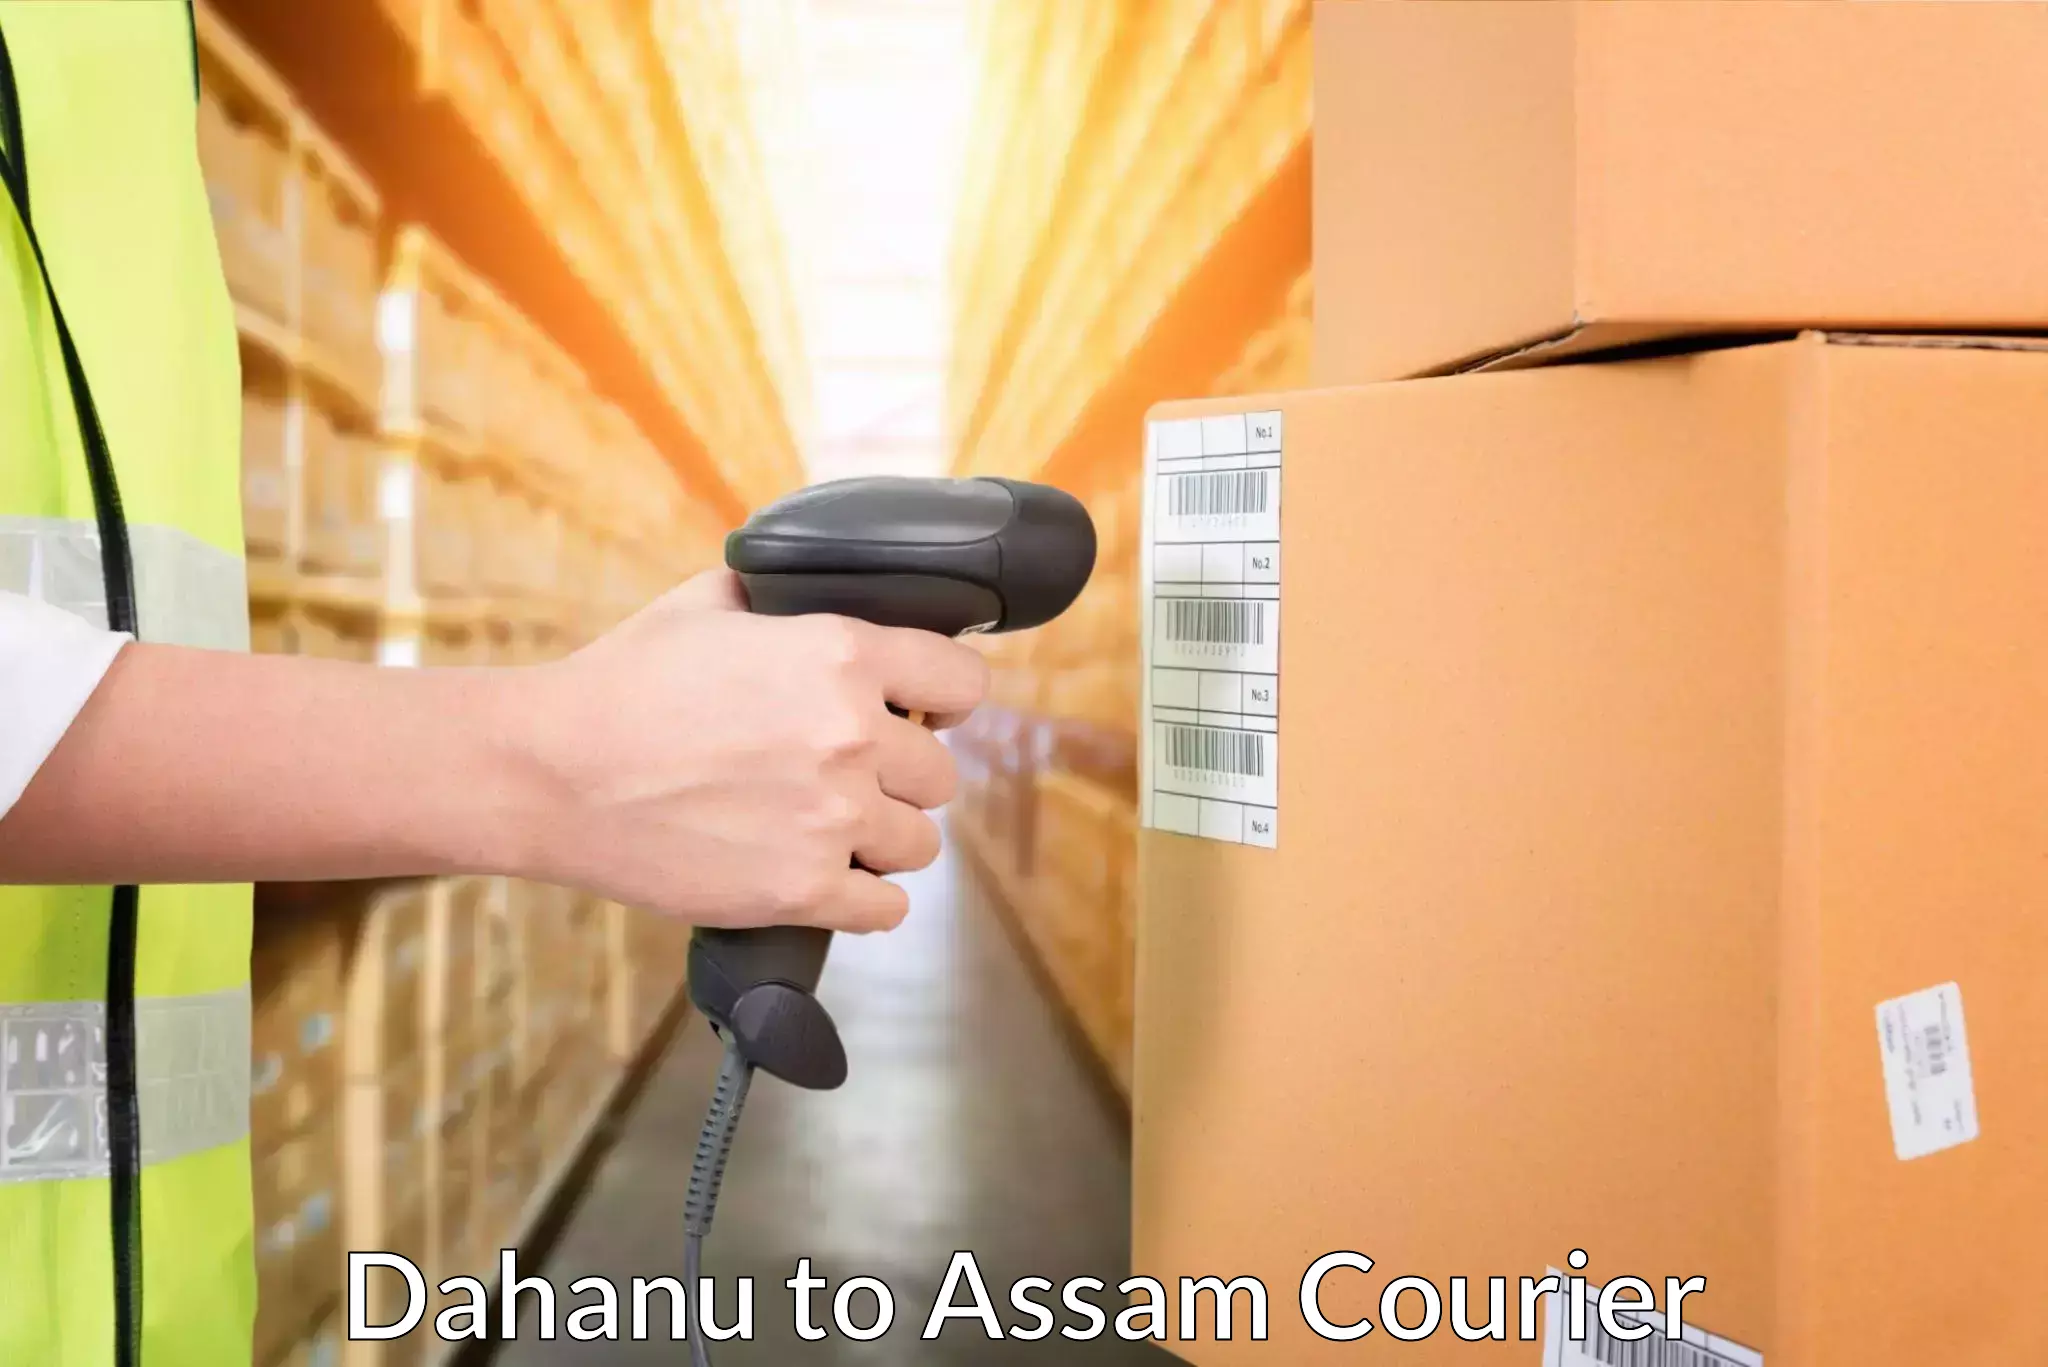 On-call courier service Dahanu to Nalbari